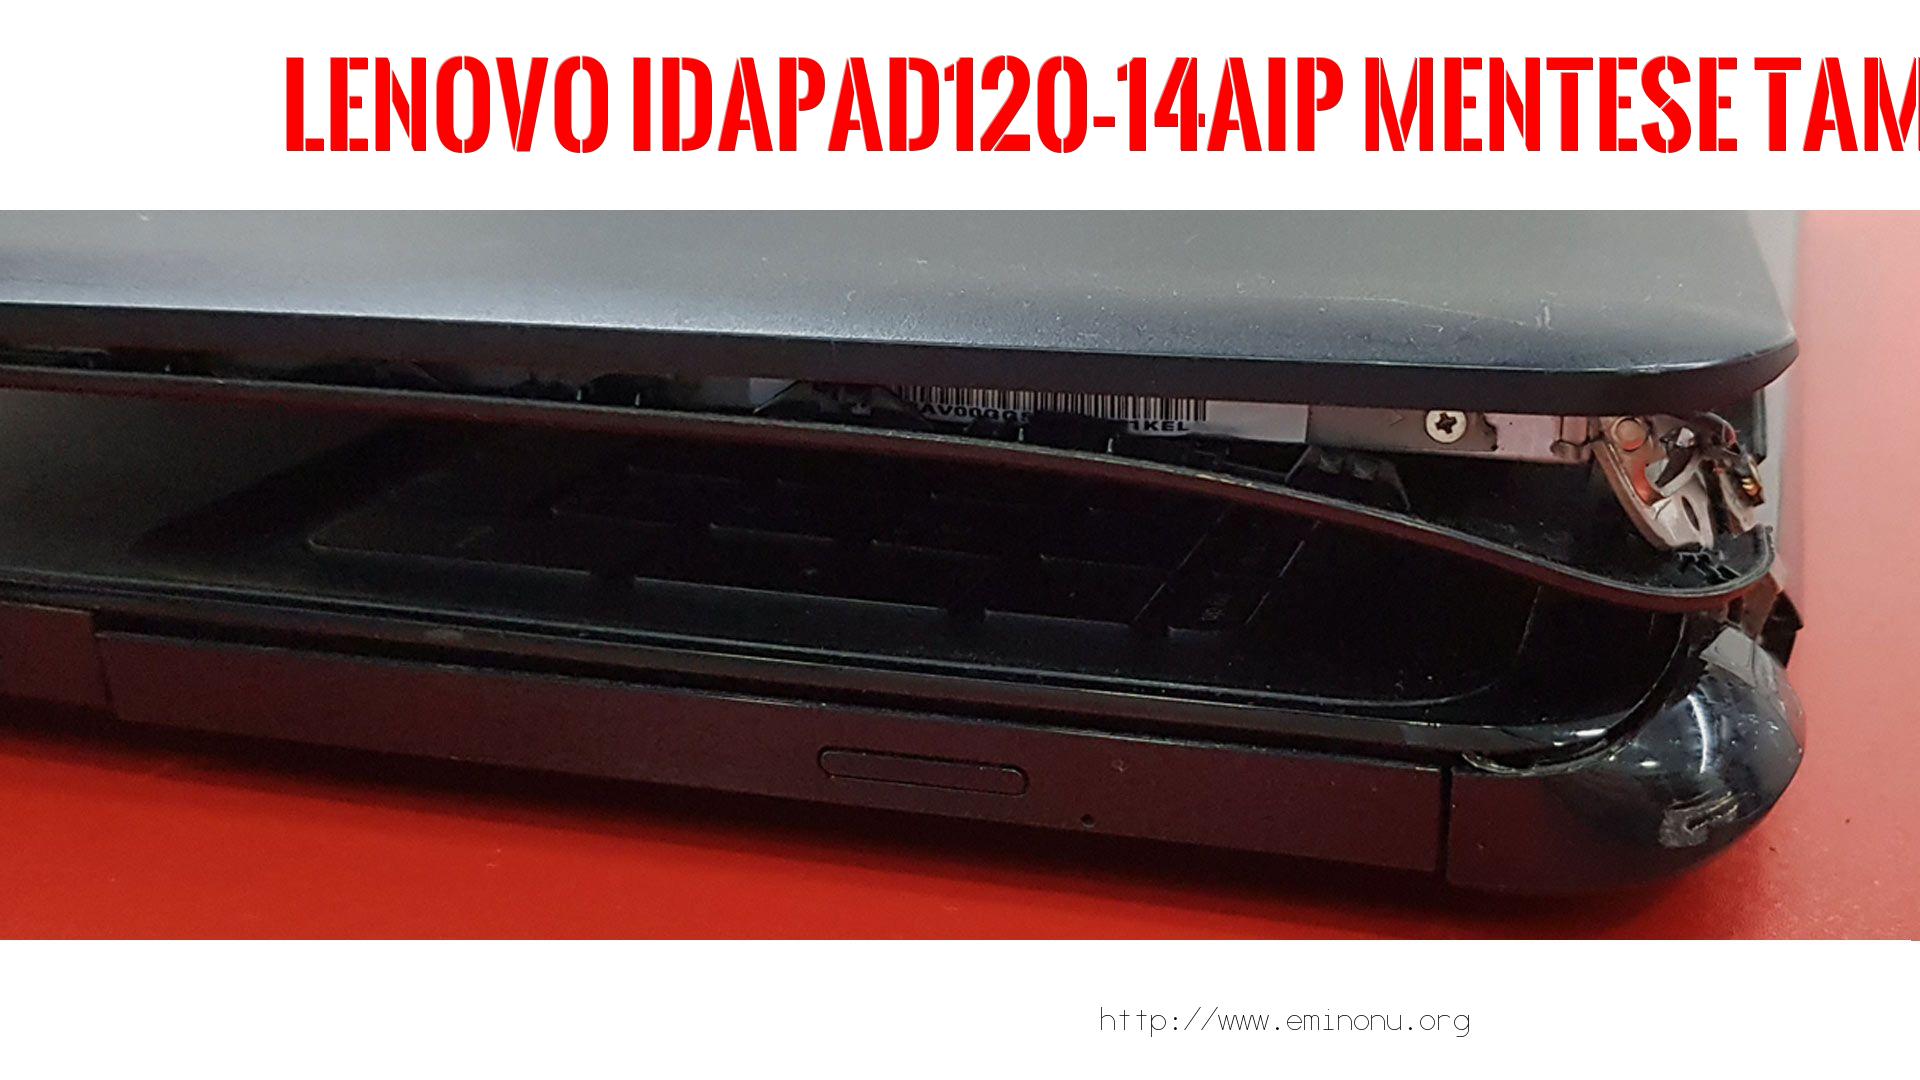 Menteşe Tamiri  Lenovo  İdapad120-14aıp  MENTEŞE TAMİRİ